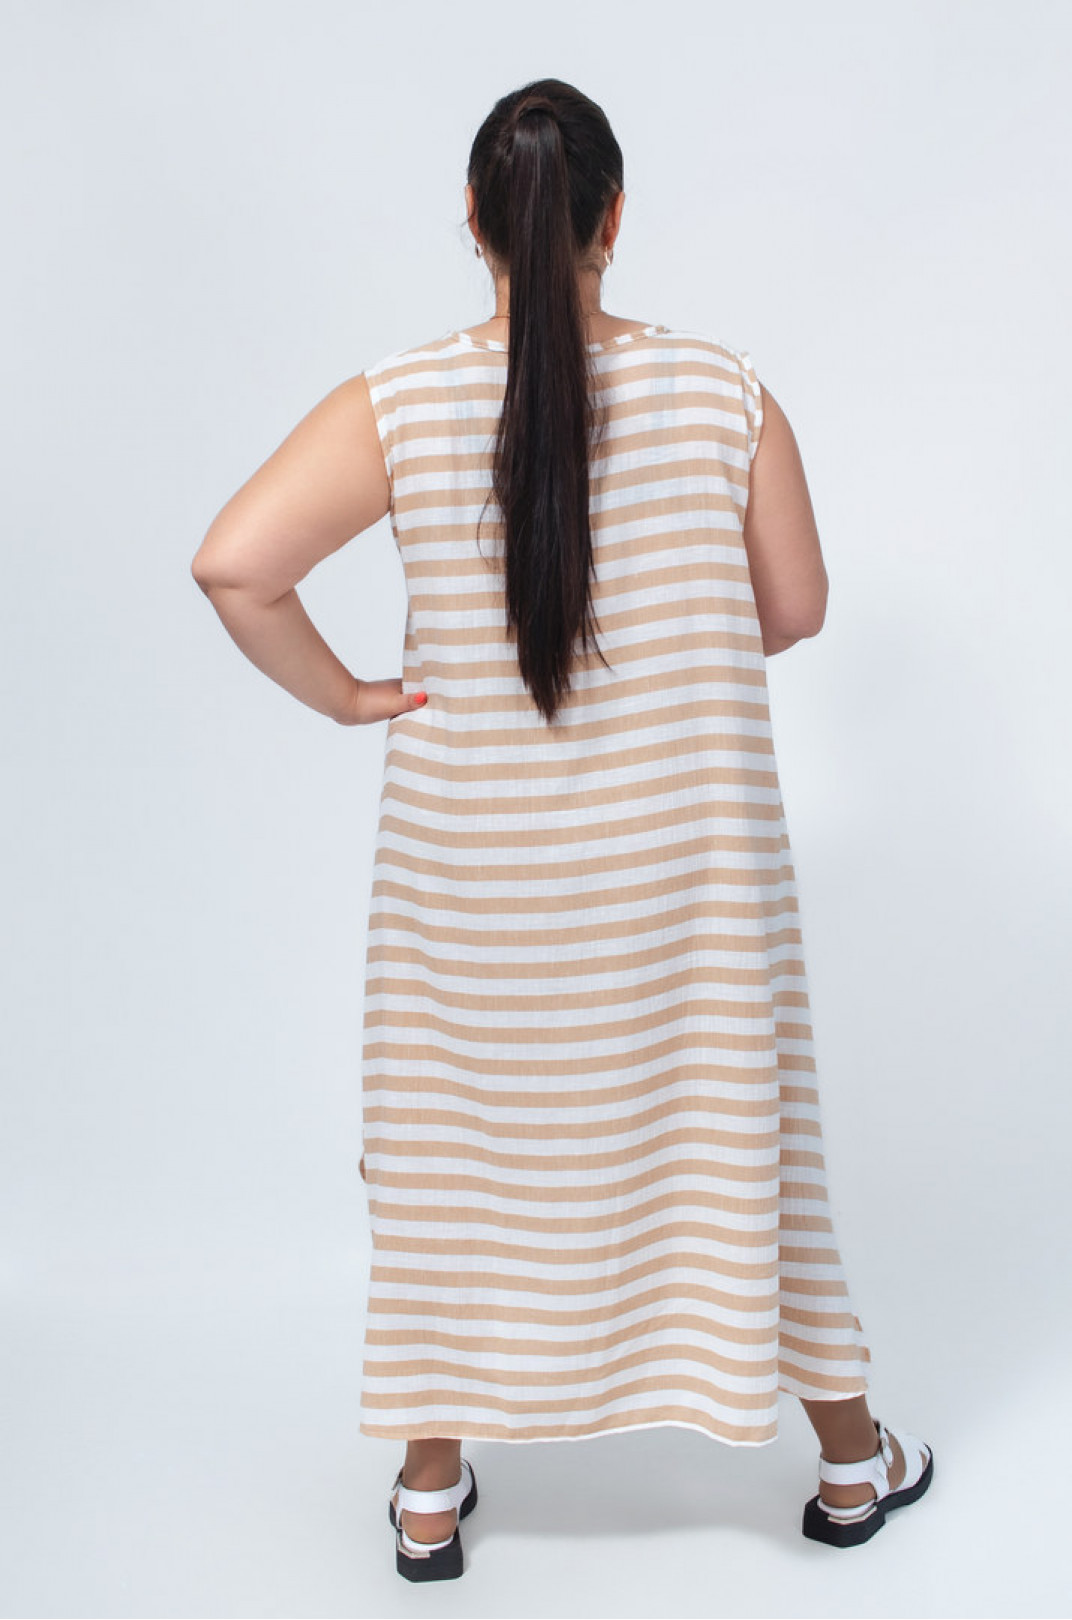 Сарафан-платье в горизонтальную полоску с украшениями батал